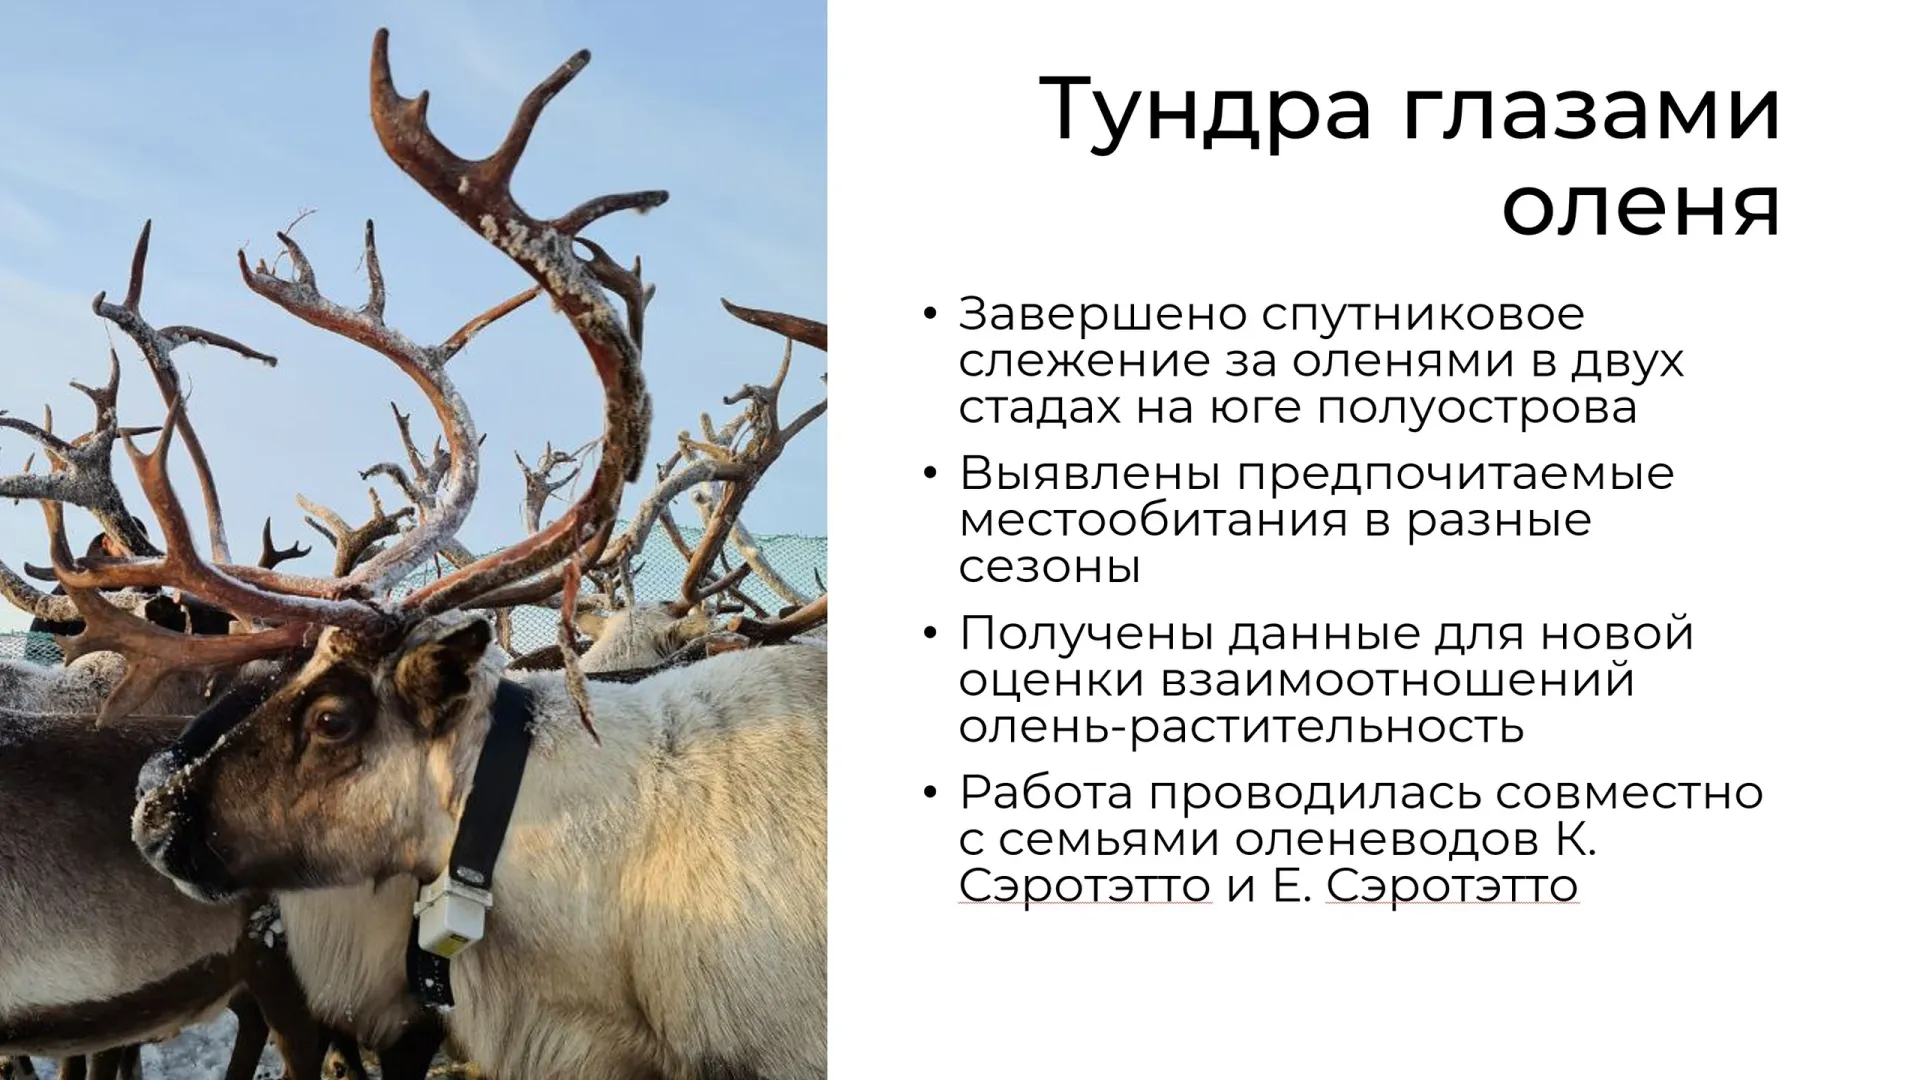 Ученые с помощью оборудования проследили за северными оленями. Скрин из презентации, предоставленной Александром Соколовым.